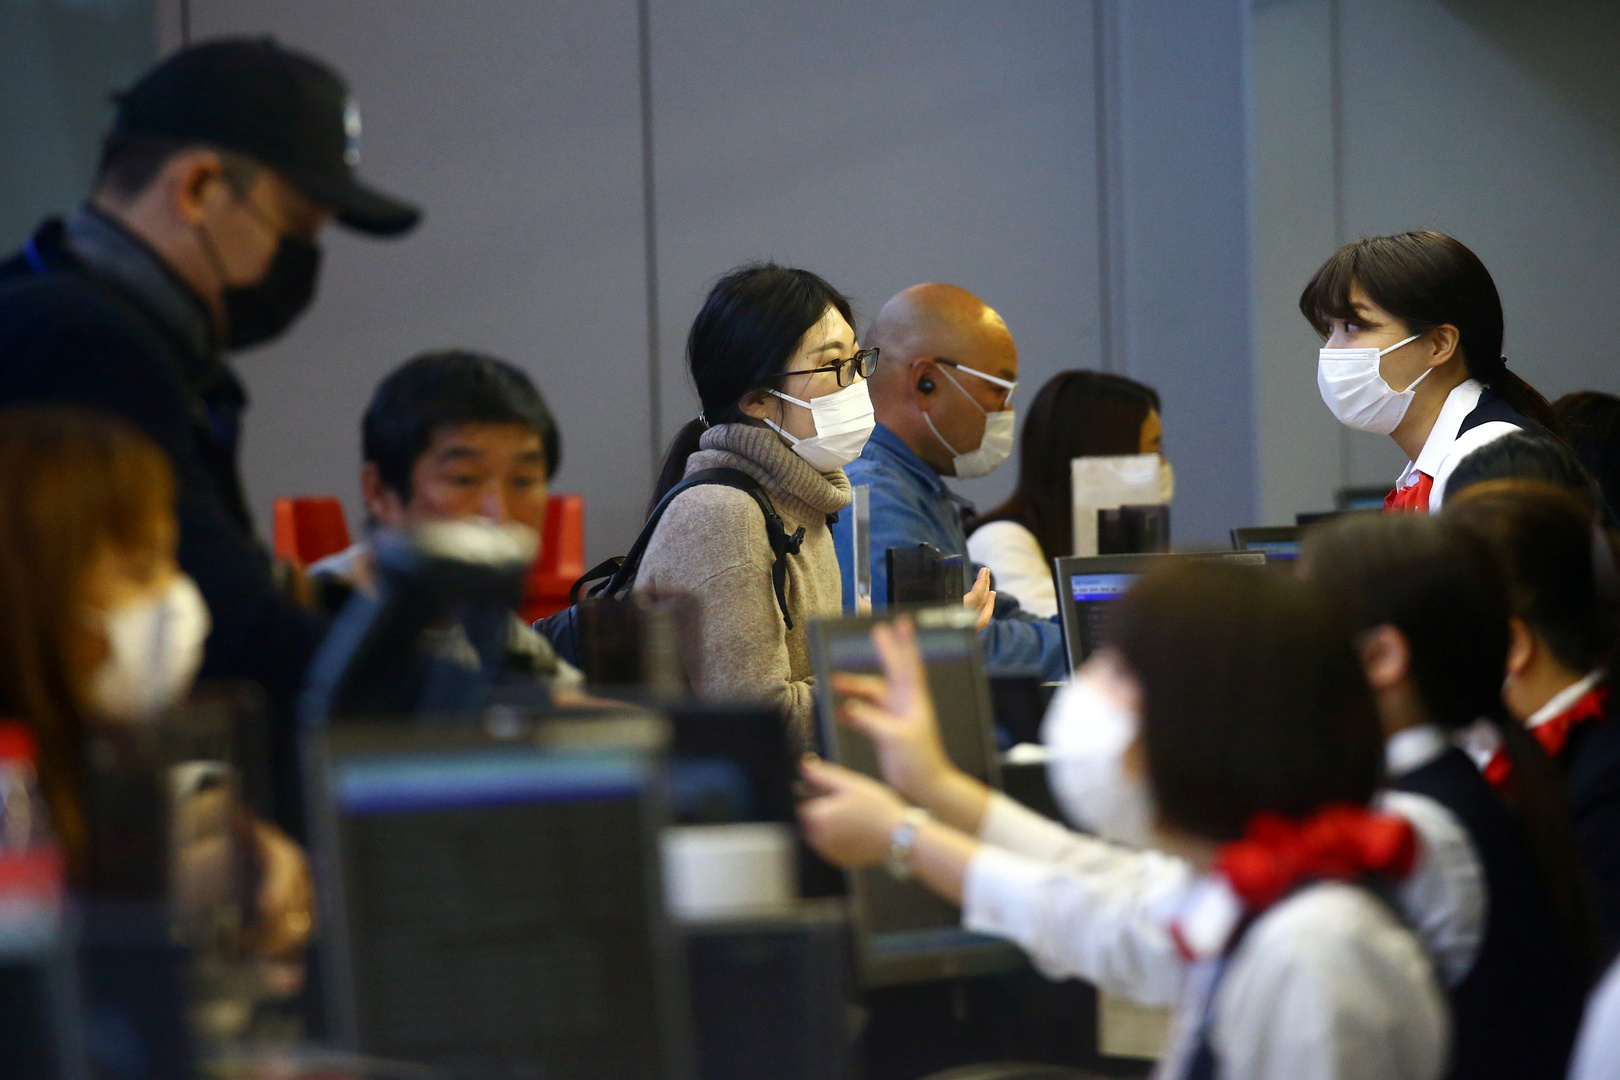 مدينة أوساكا تطلب من السلطات اليابانية إعلان حالة الطوارئ بسبب تفشي وباء كورونا